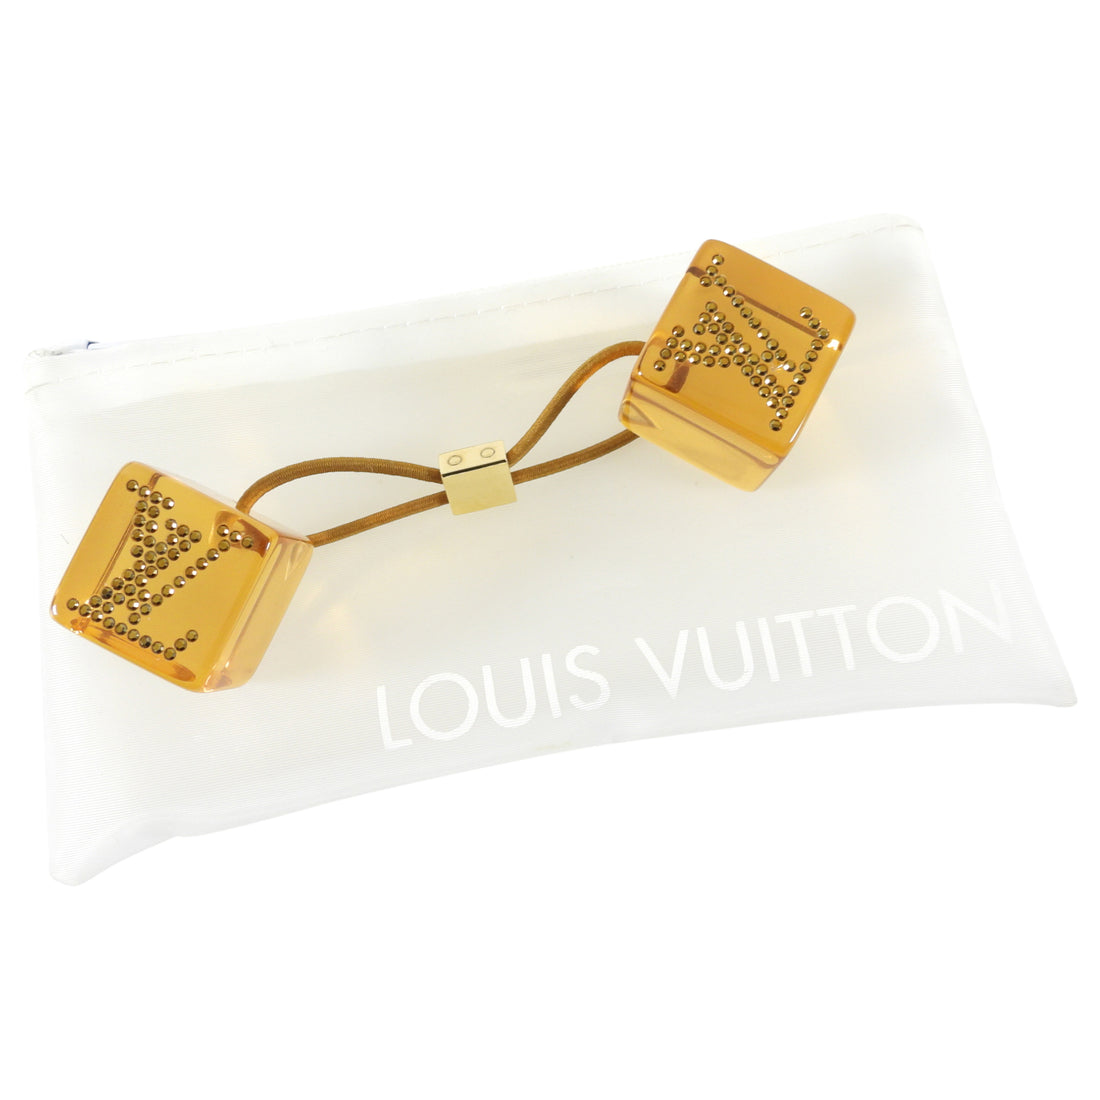 Louis Vuitton Clear Acrylic Rhinestone Cube Hair Tie